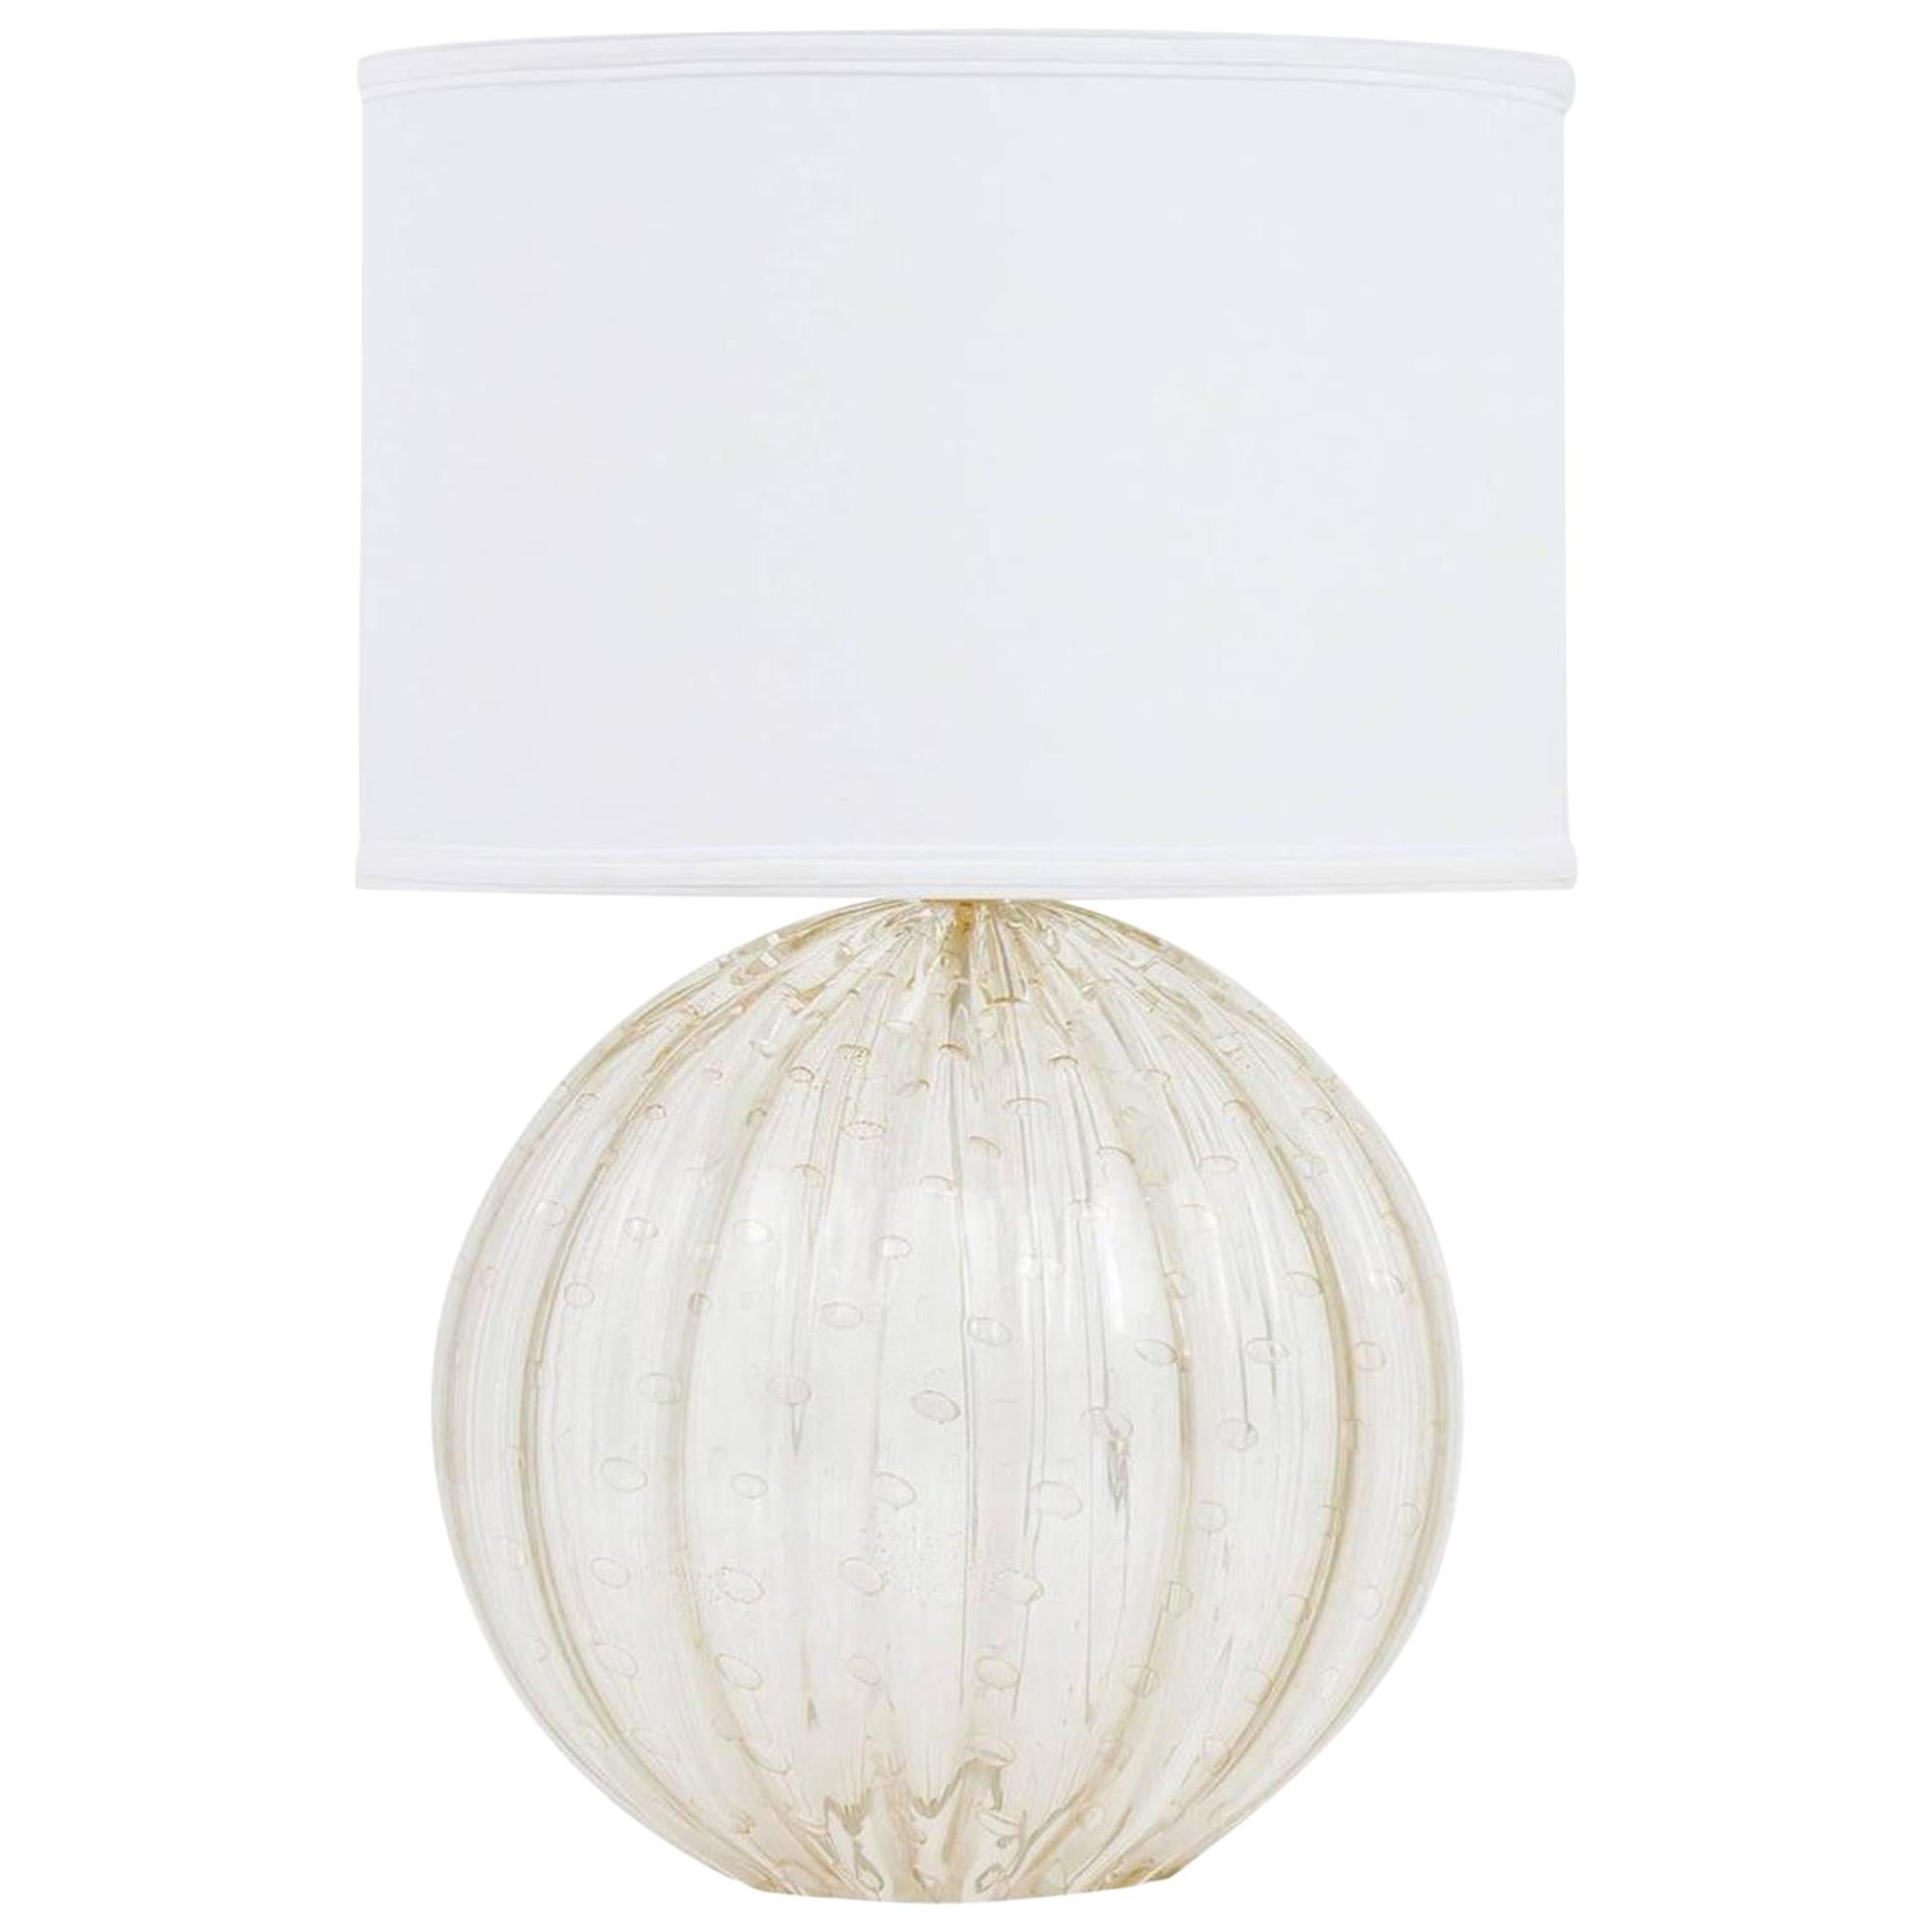 Single Murano "Pulegoso" Glass Globe Lamp